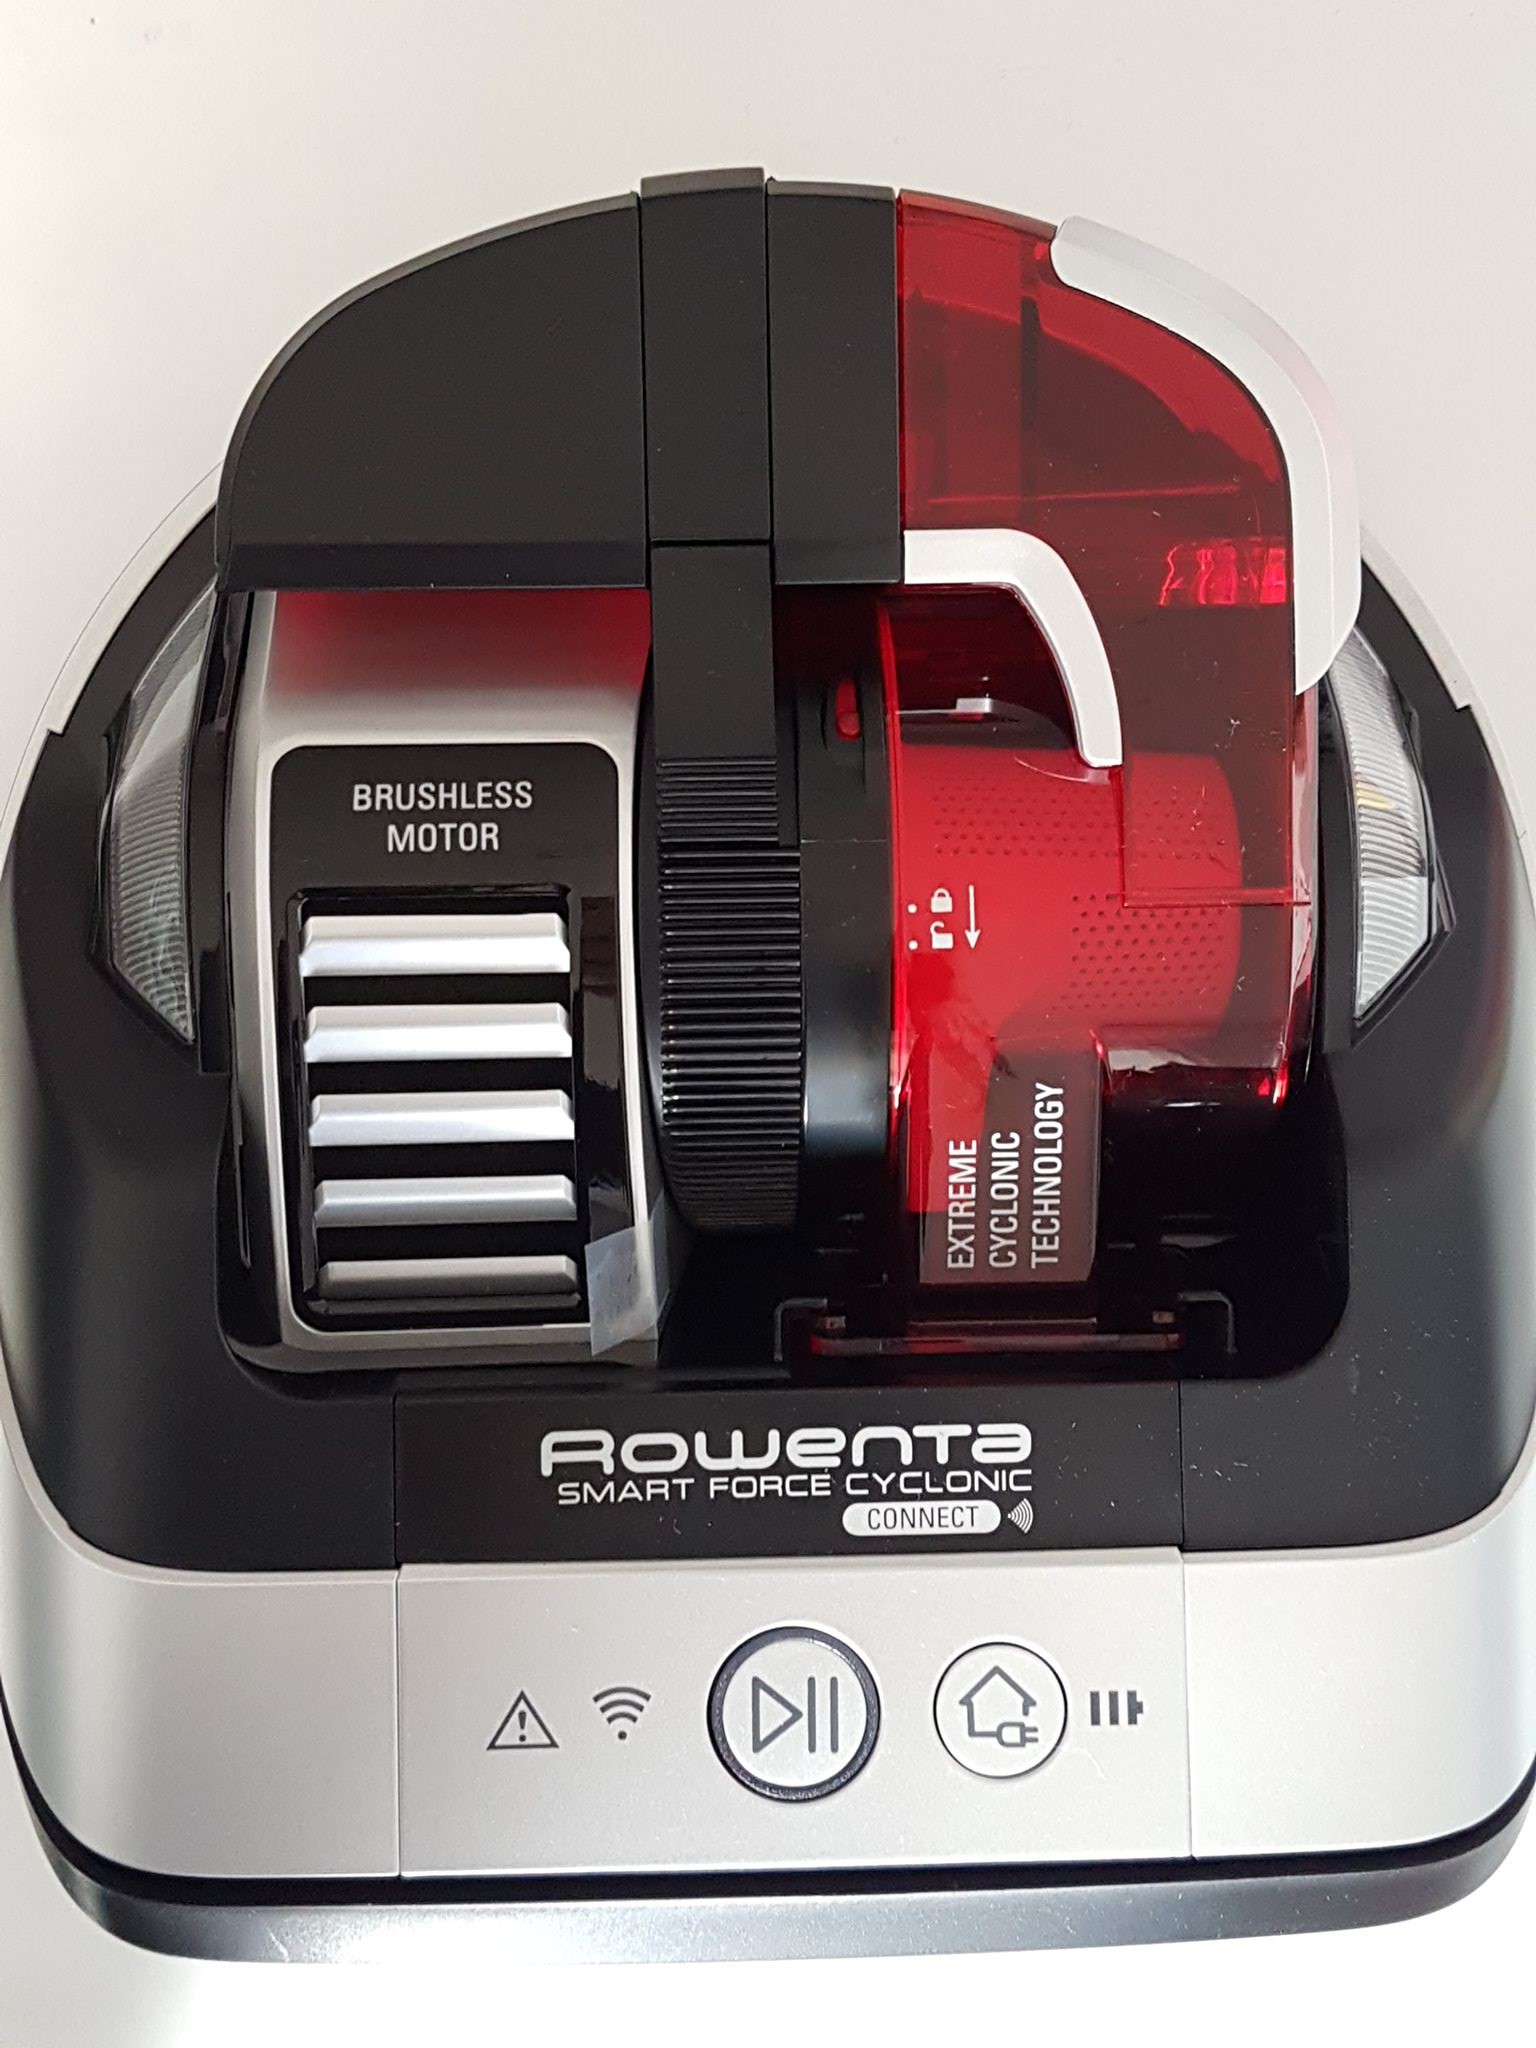 ROWENTA RR8043WH - Fiche technique, prix et avis